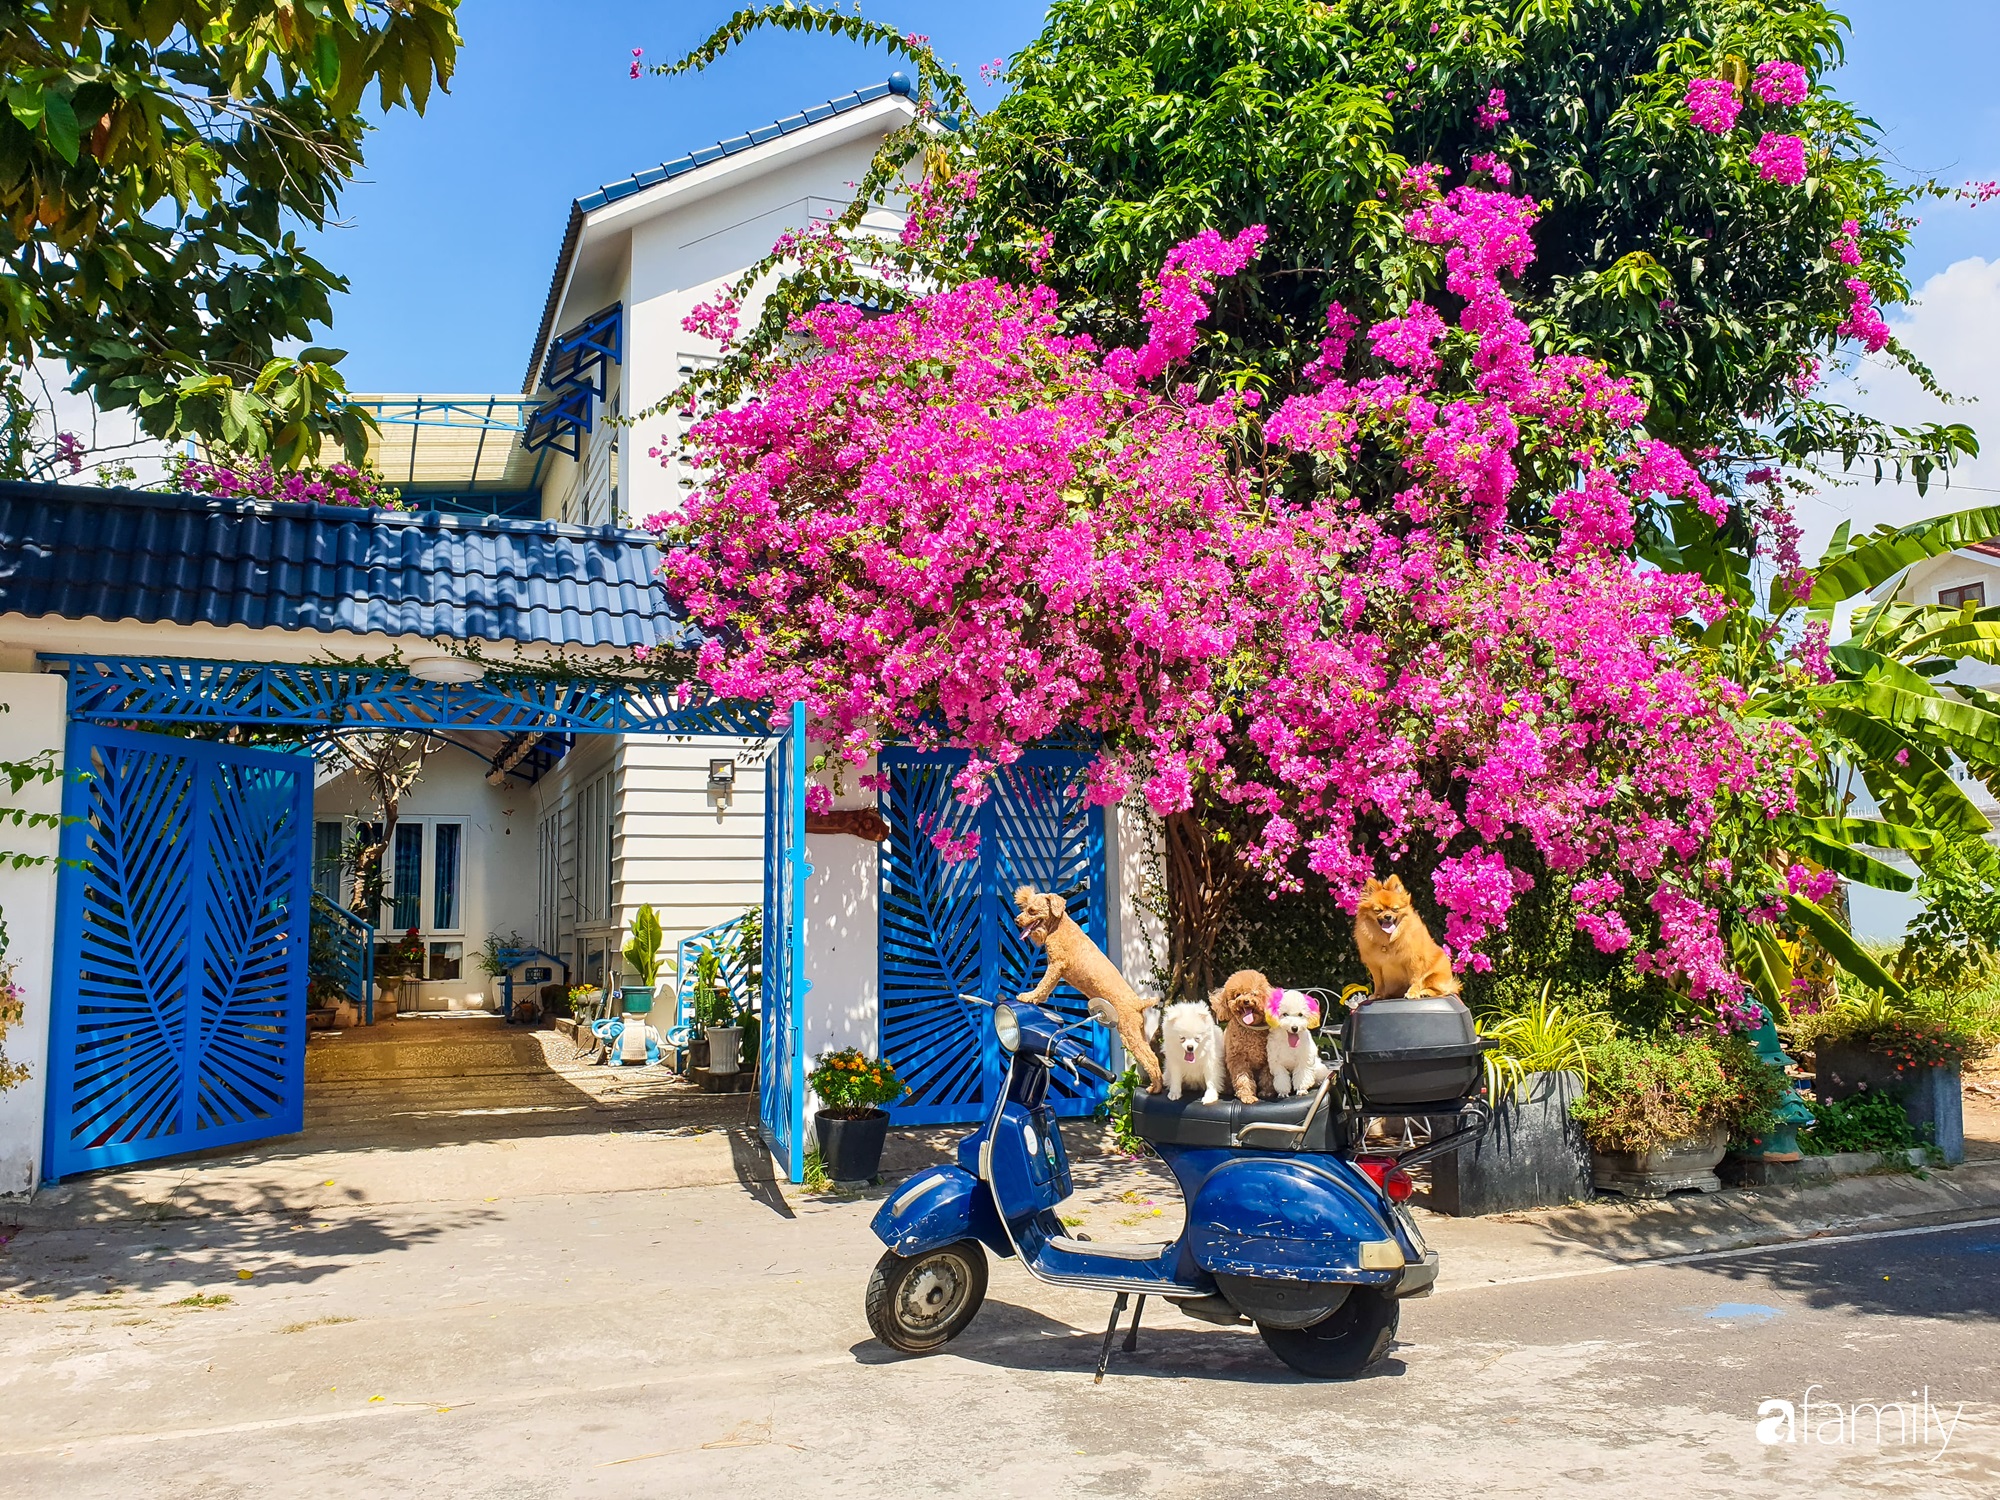  Ngôi nhà nổi bật với những sắc màu Địa Trung Hải, cánh cổng sơn màu xanh nước biển, giàn hoa giấy đang nở rộ khoe sắc dưới nắng hè. Bên trong là khoảng sân nhỏ với những góc tiểu cảnh, khu vực nuôi cá, trồng cây... đẹp sinh động dành cho thú cưng.